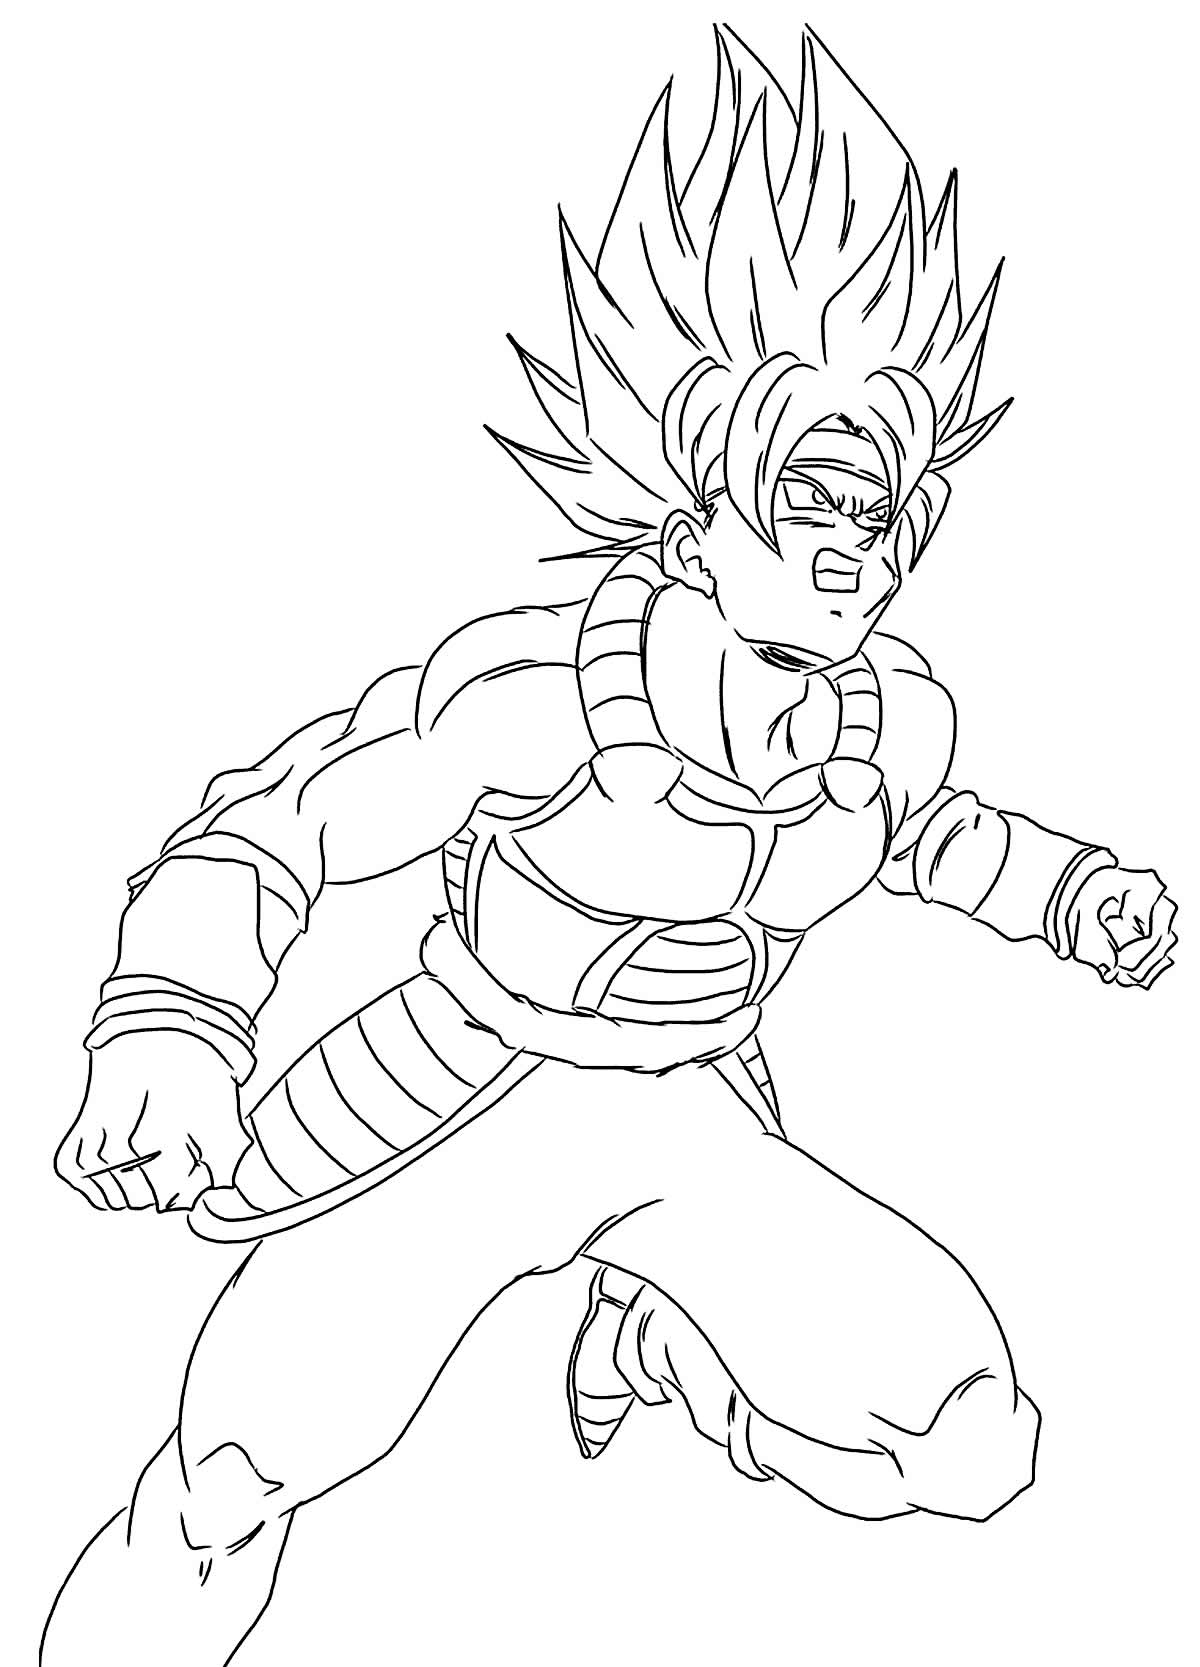 Desenho para pintar de Dragon Ball Z